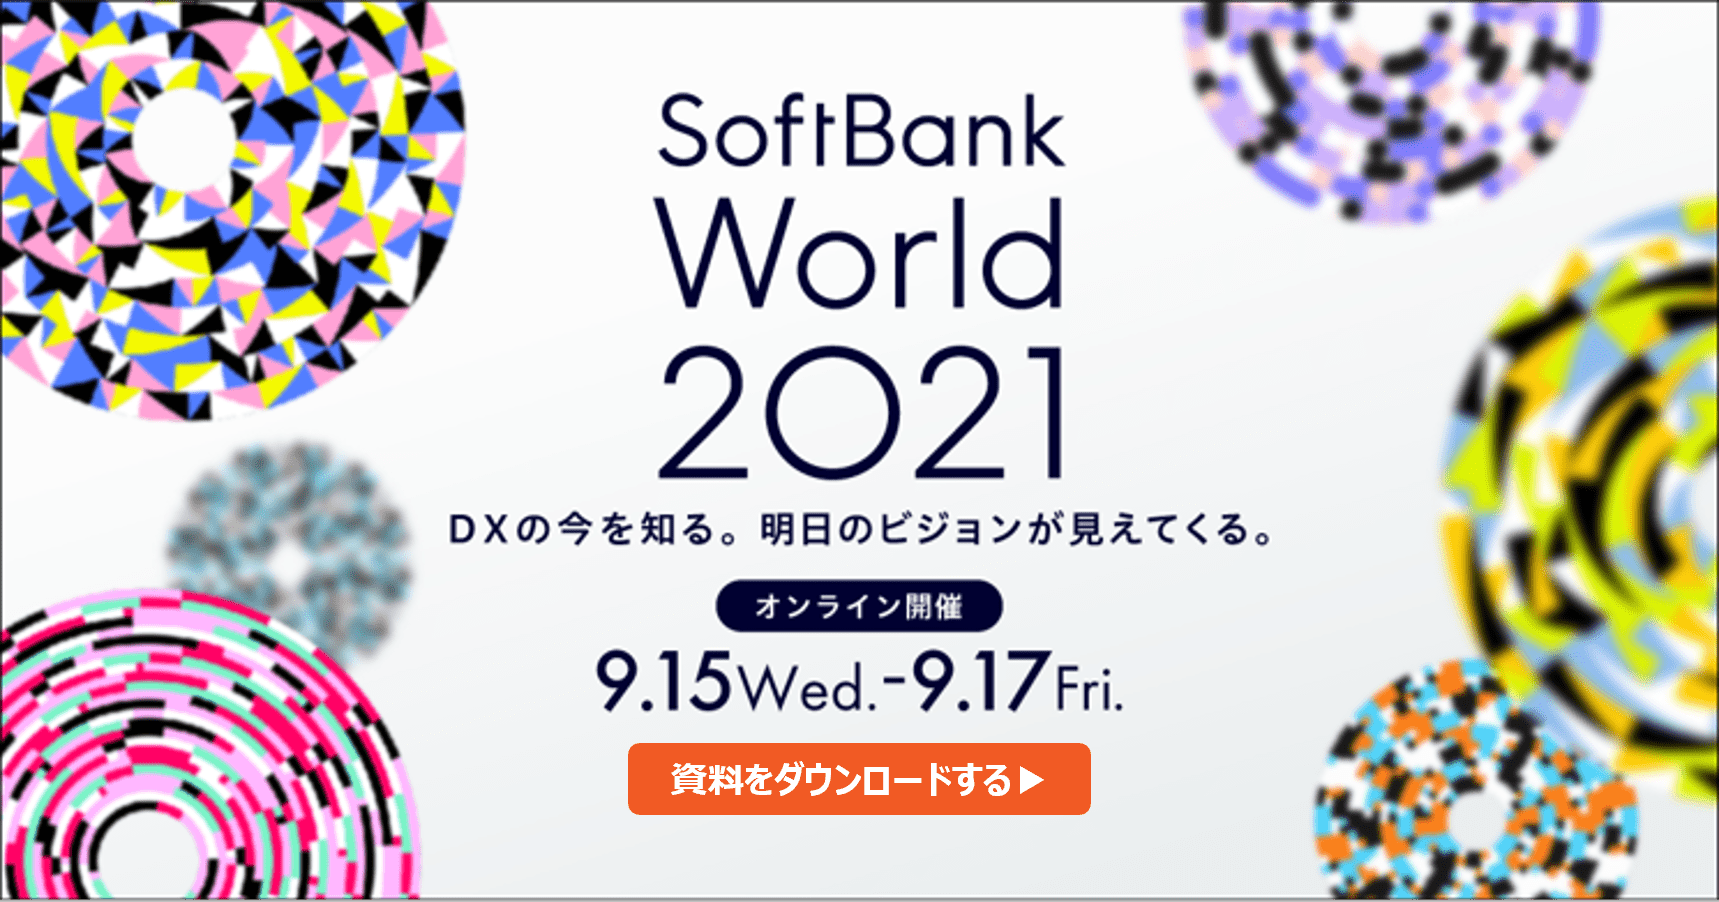 【SoftBank World 2021】当日講演資料がダウンロードできます